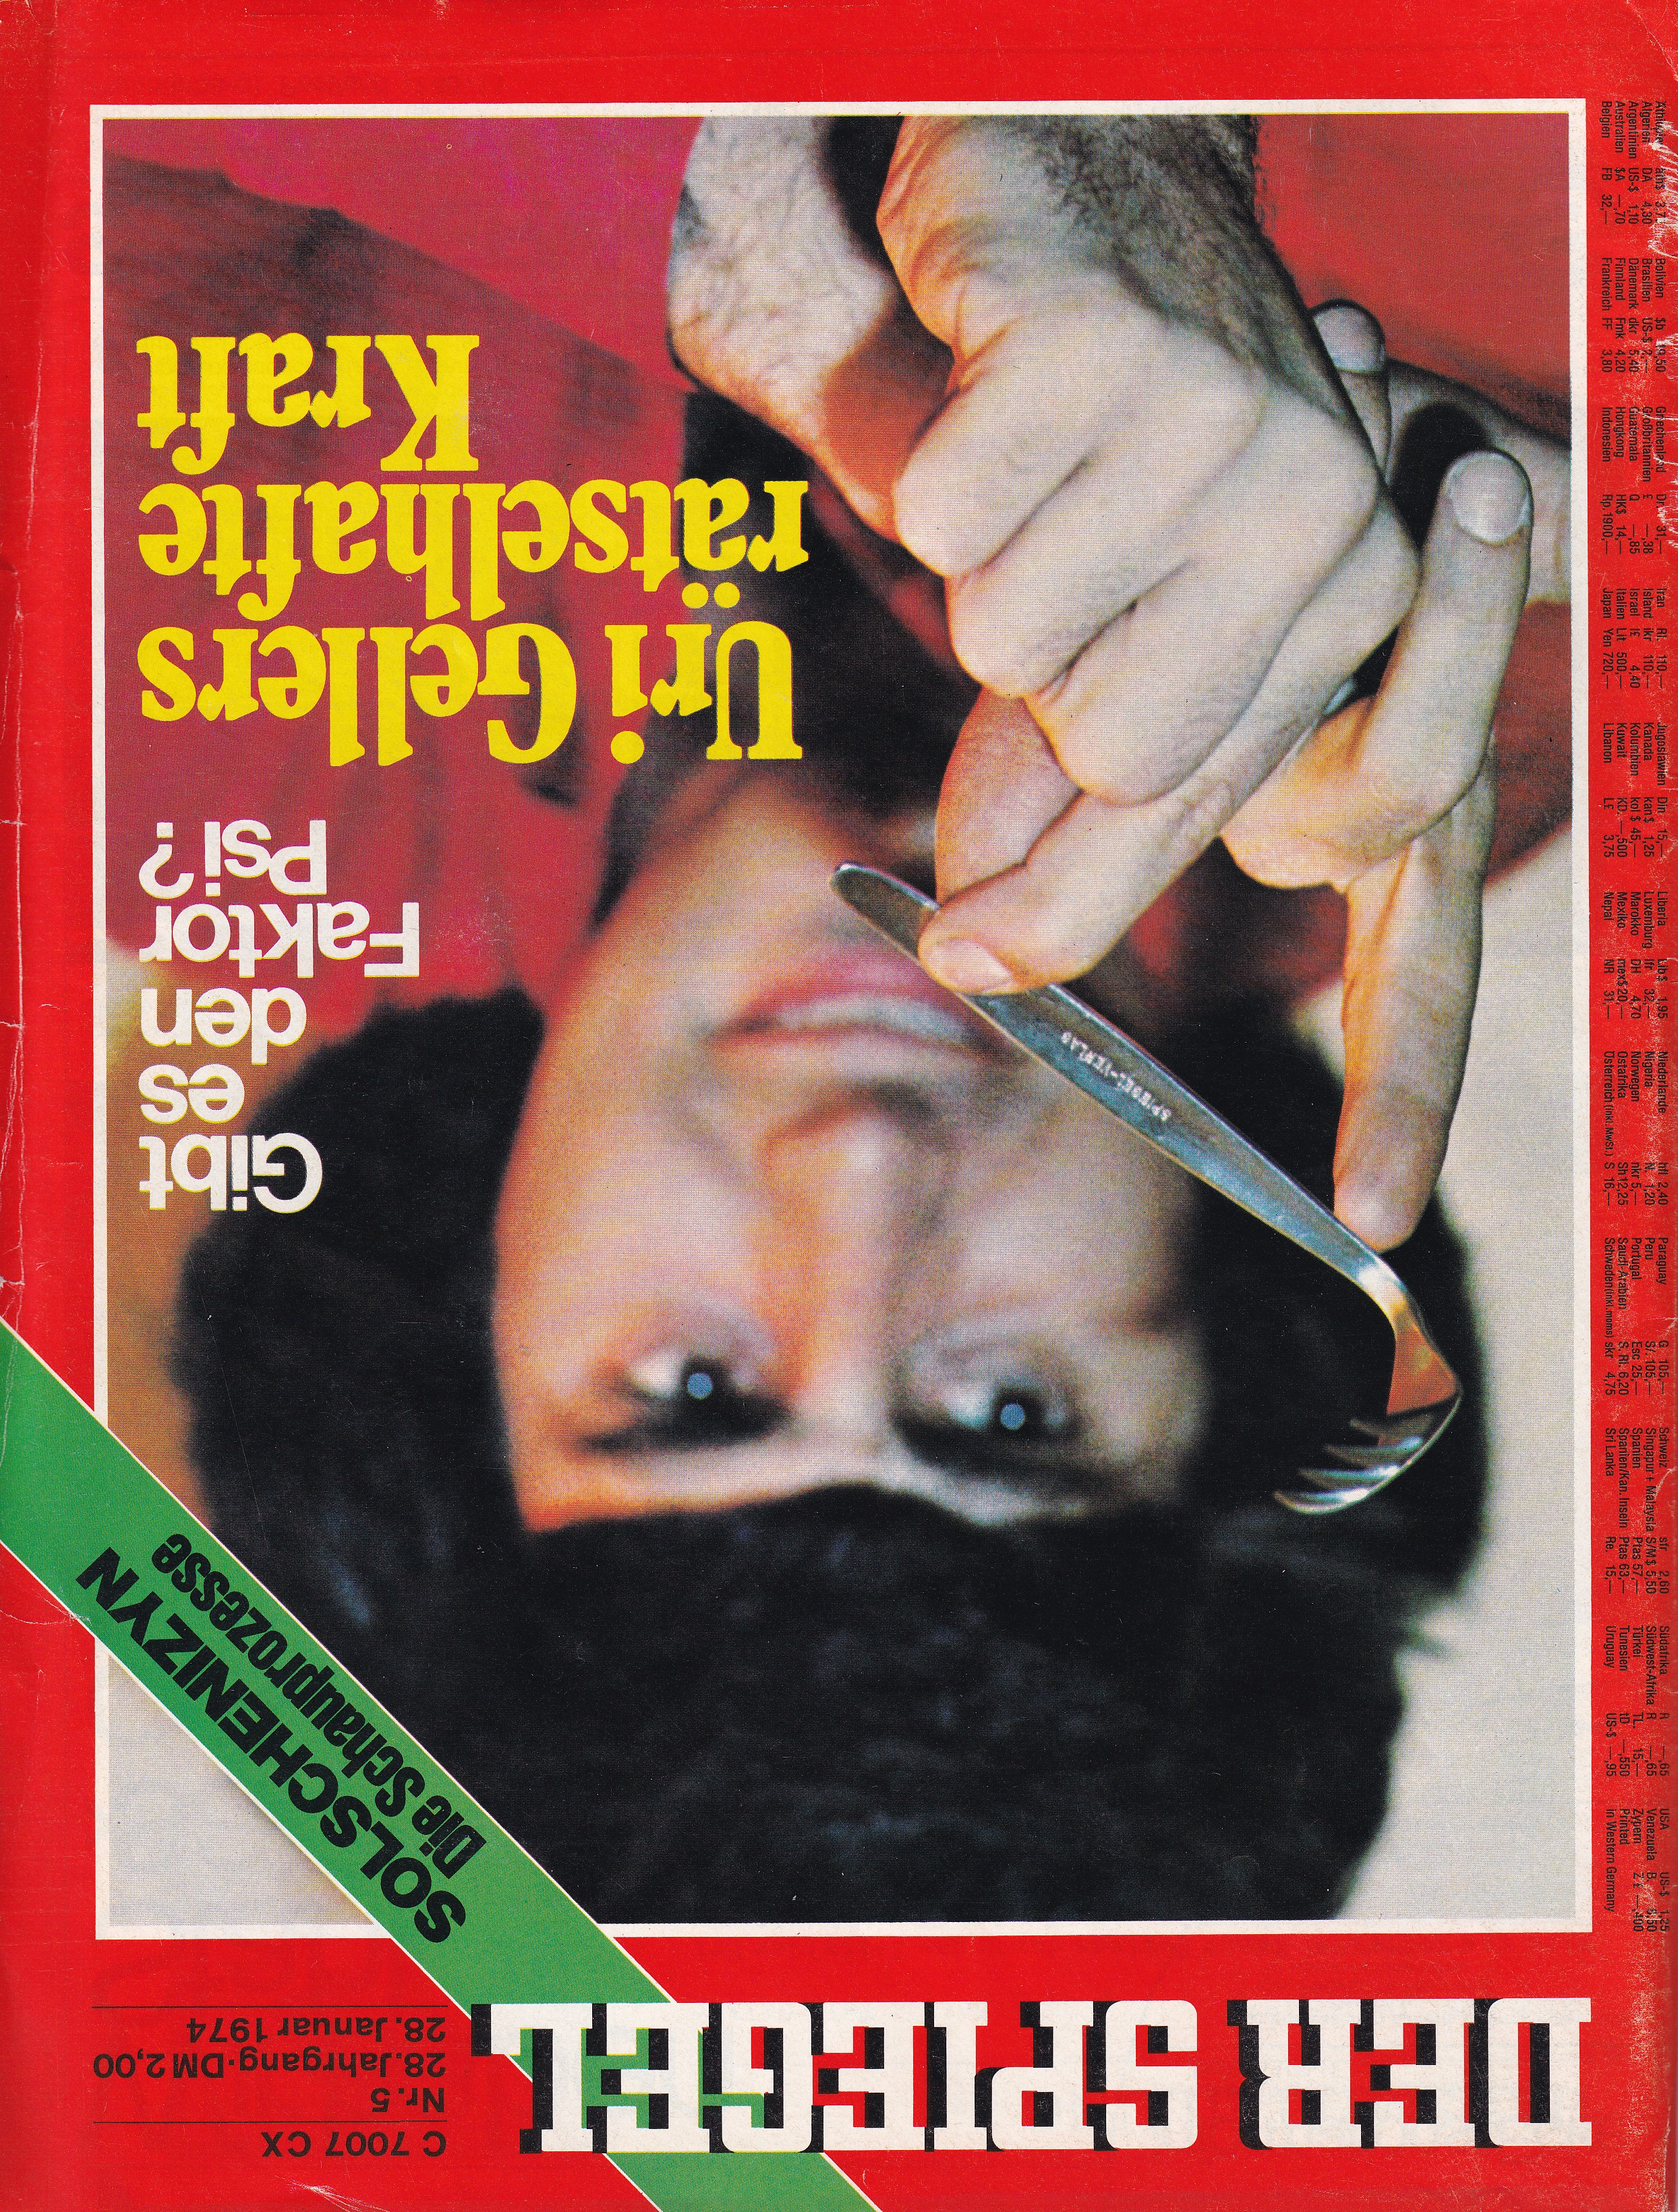 Ausgabe DER SPIEGEL vom 28. Januar 1974 (Archiv des IGPP)